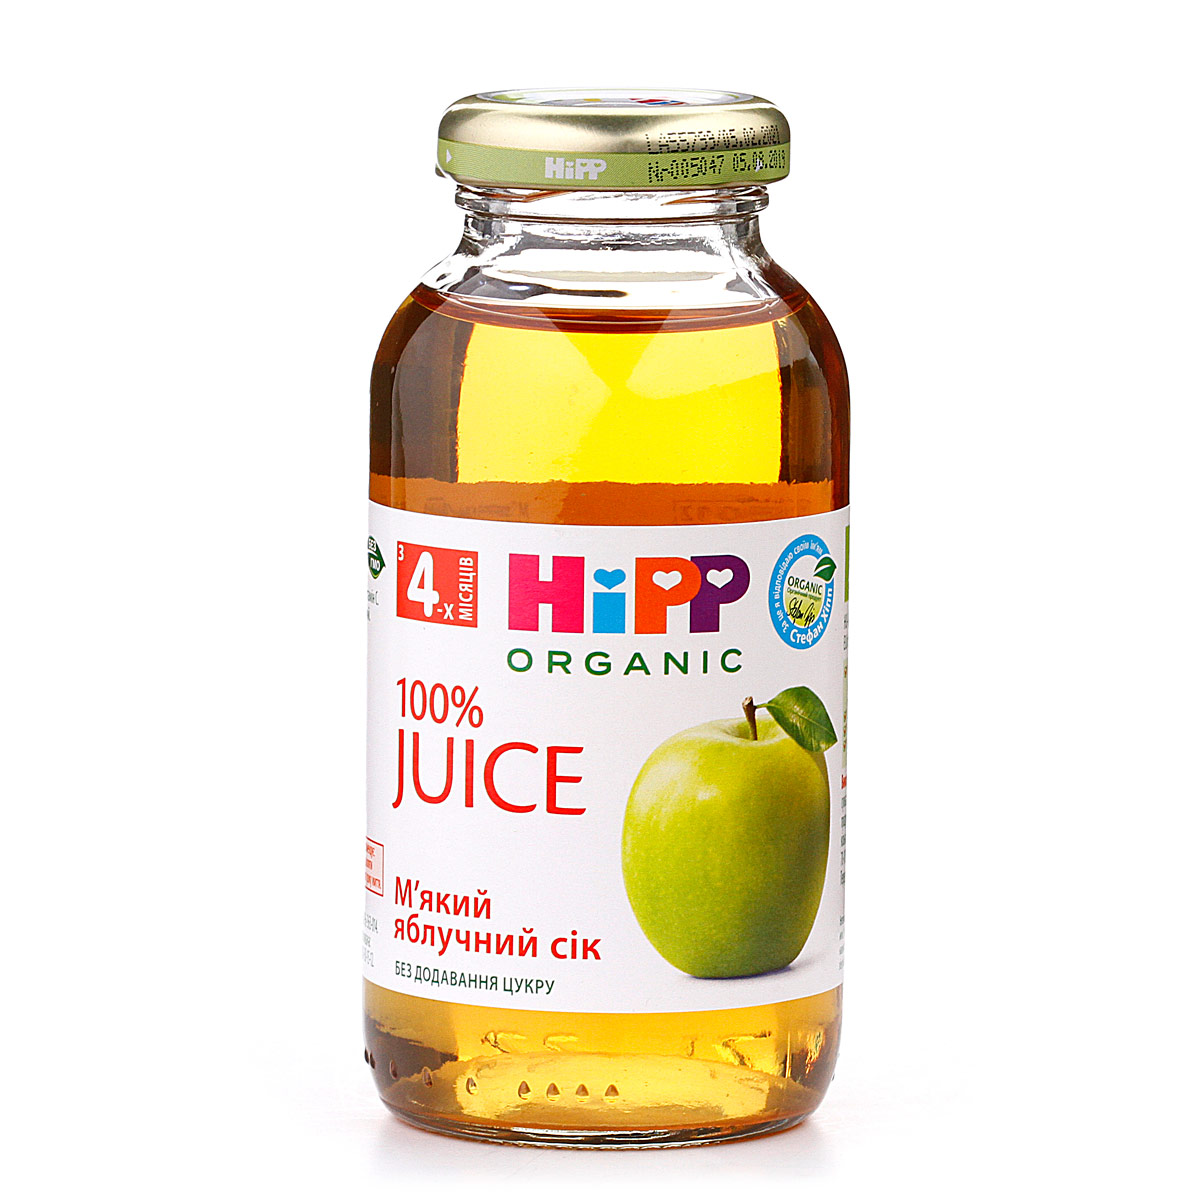 Органический "Мягкий яблочный сок" - фото 8 | Интернет-магазин Shop HiPP